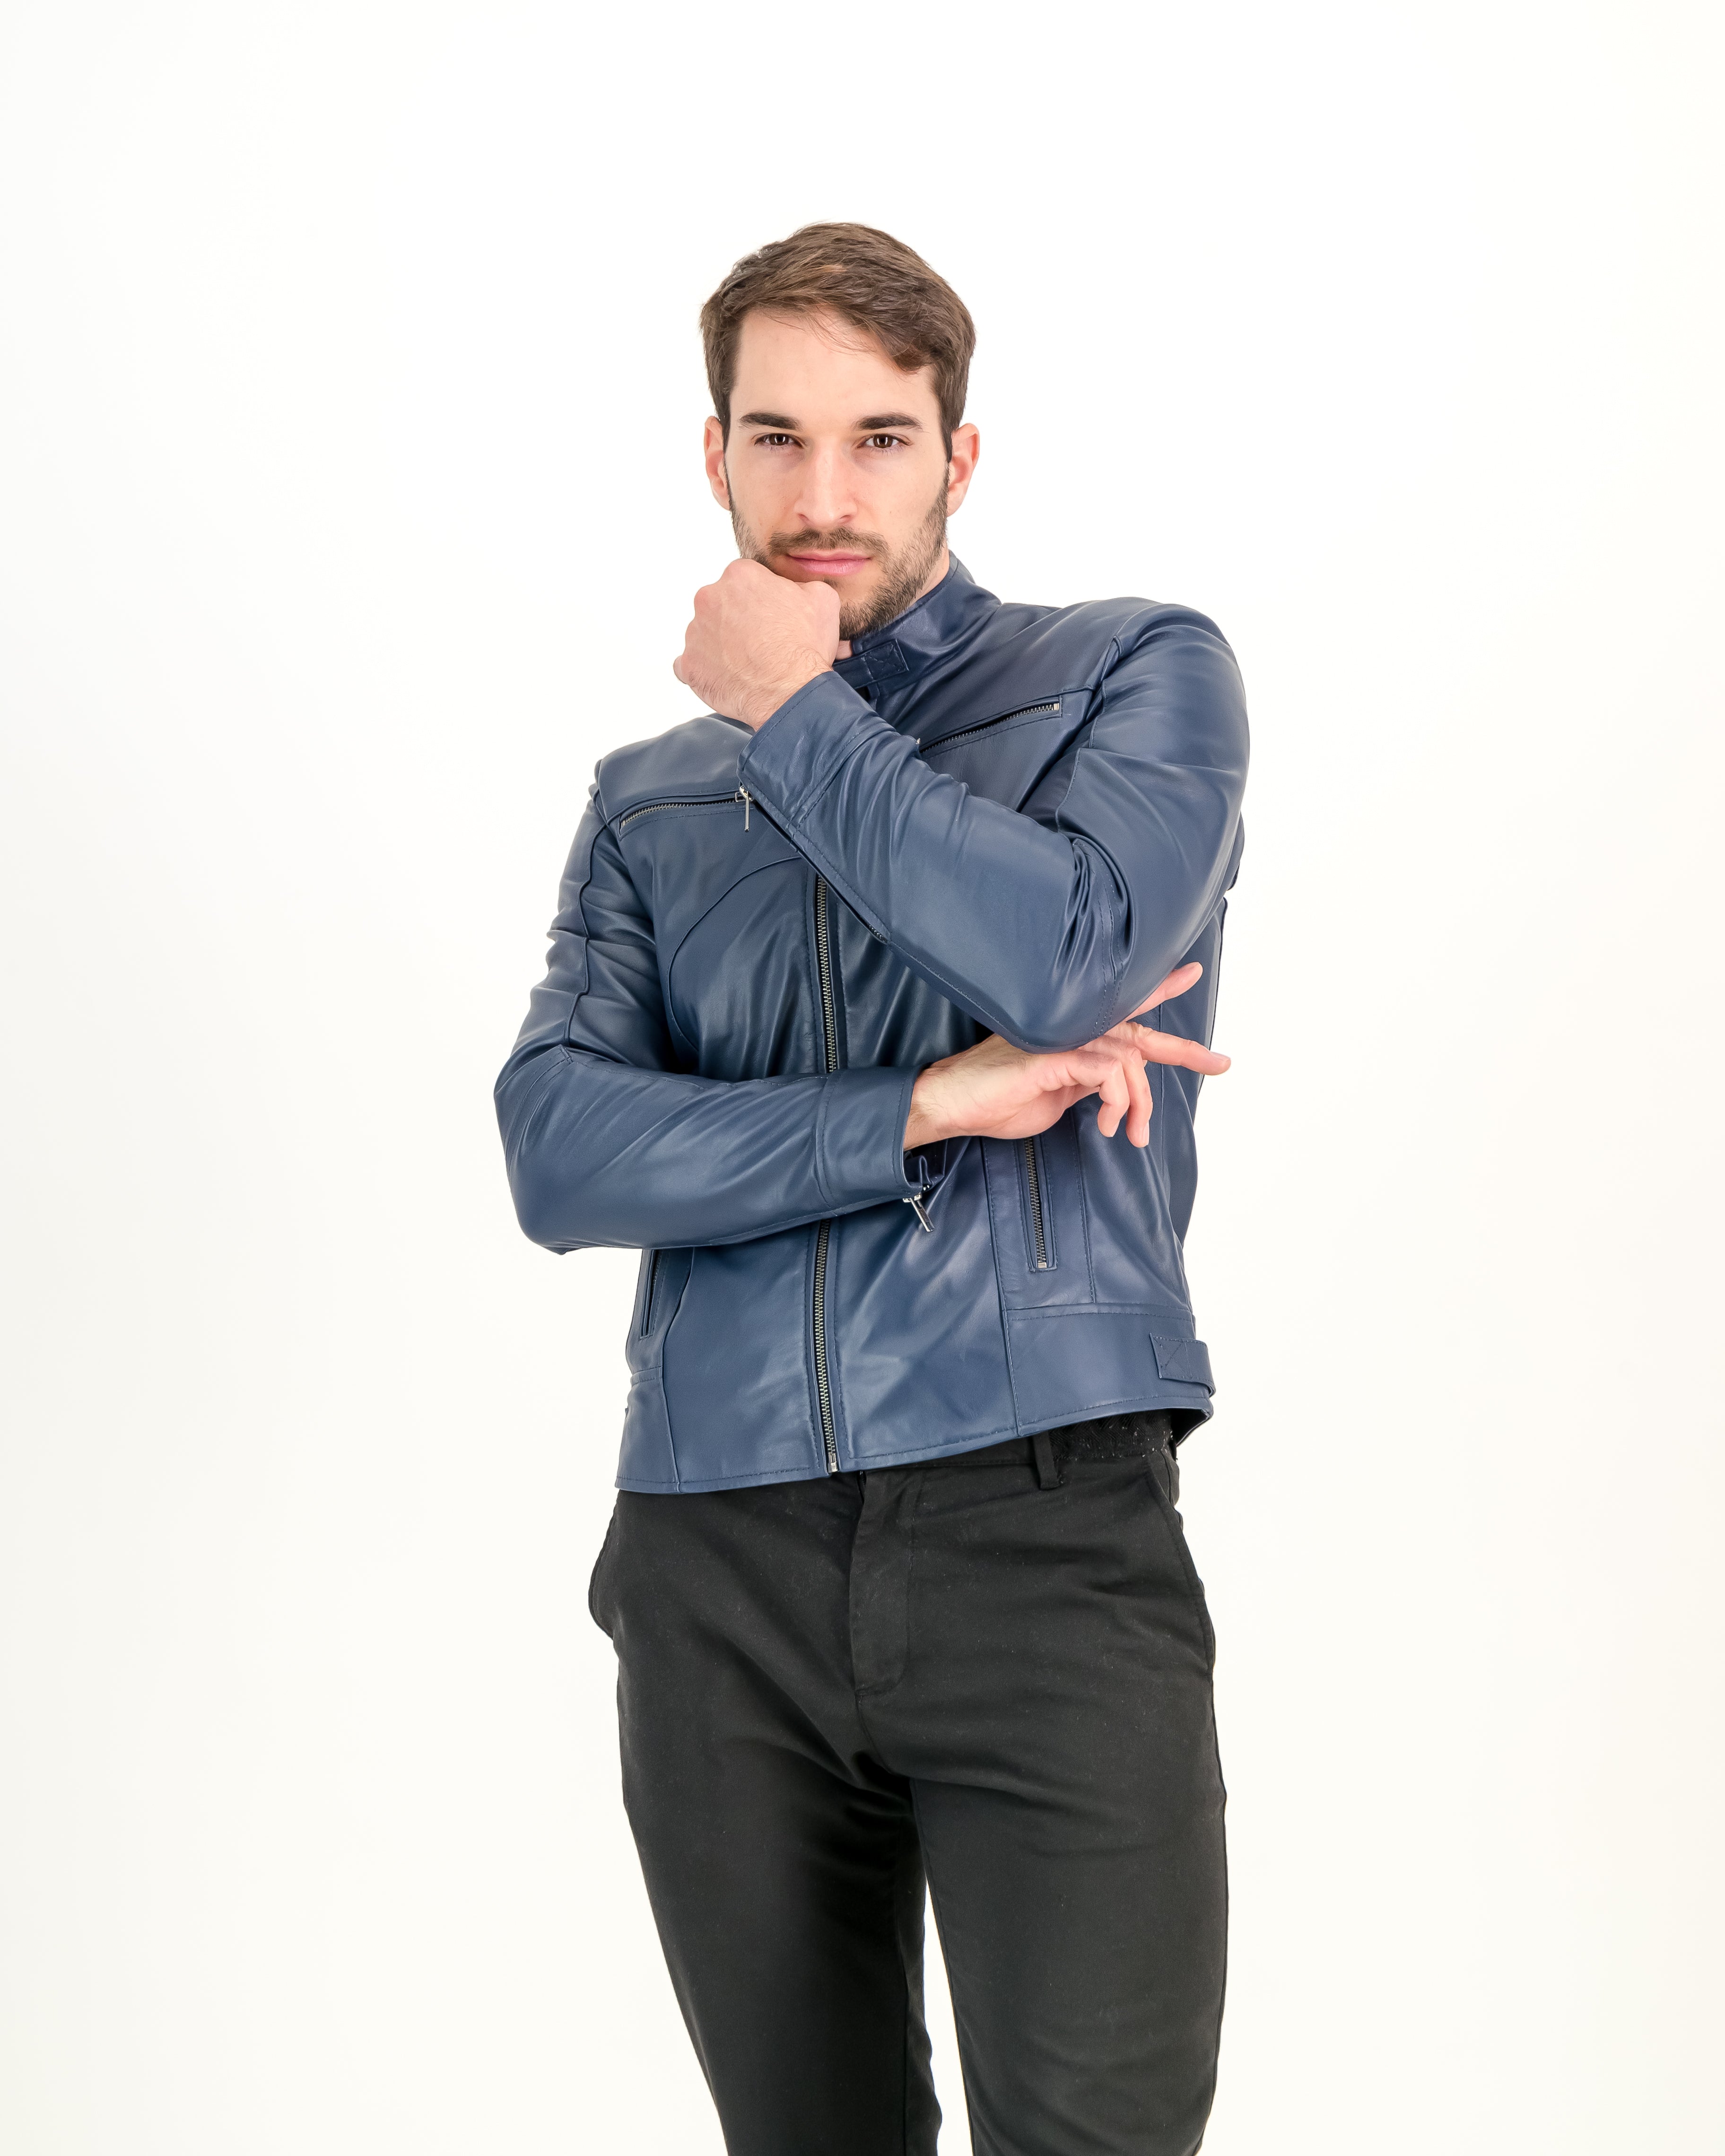 Men's Navy Blue Slim-Fit Leather Jacket- Supreme Leather